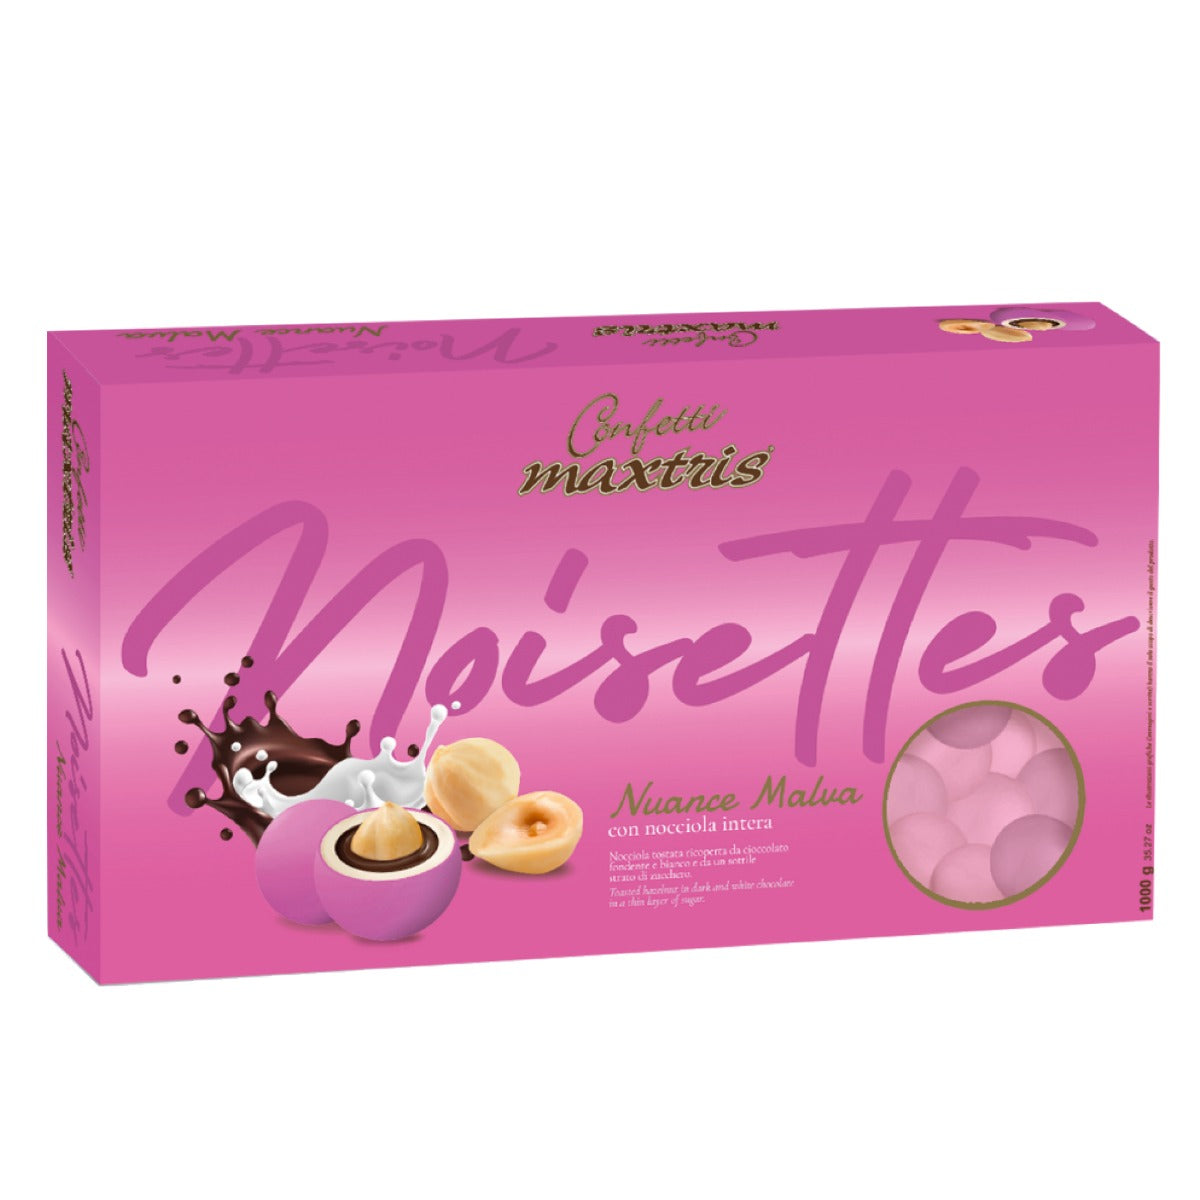 Confetti Maxtris ciocconocciola nuance malva